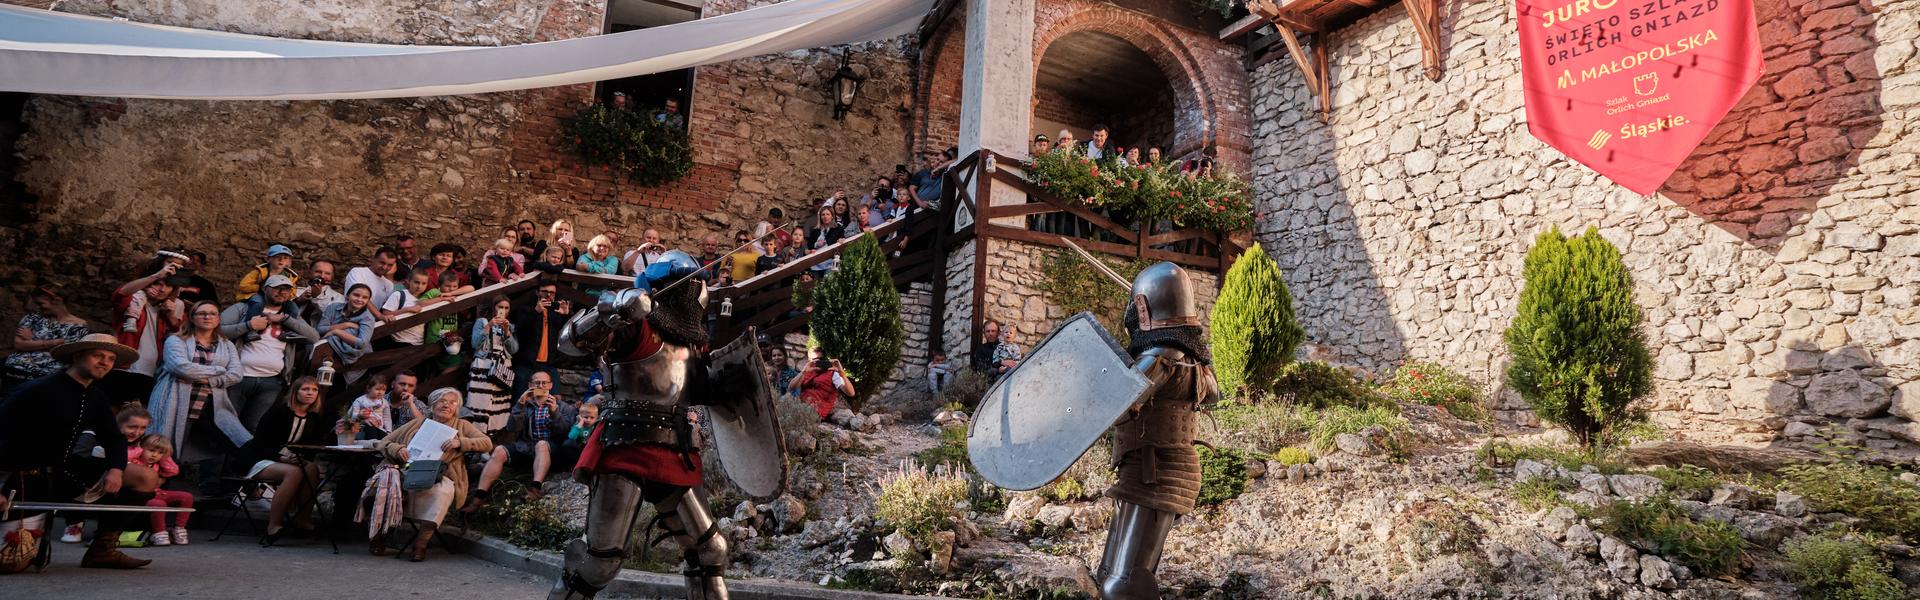 Inscenizacja walki dwóch rycerzy na dziedzińcu zamku w Korzkwi